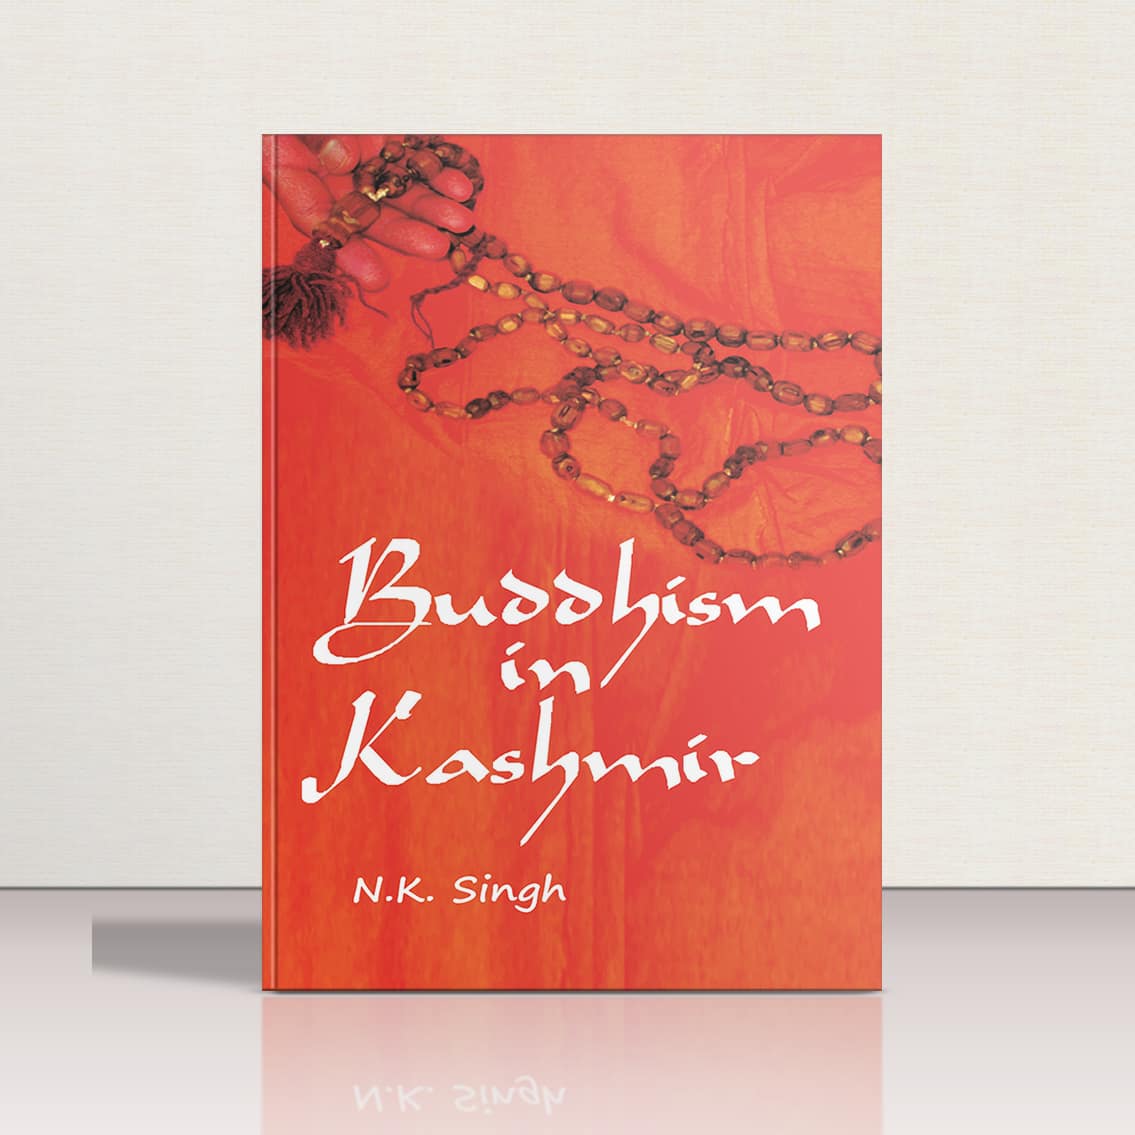 Buddhism in Kashmir by N.K Singh